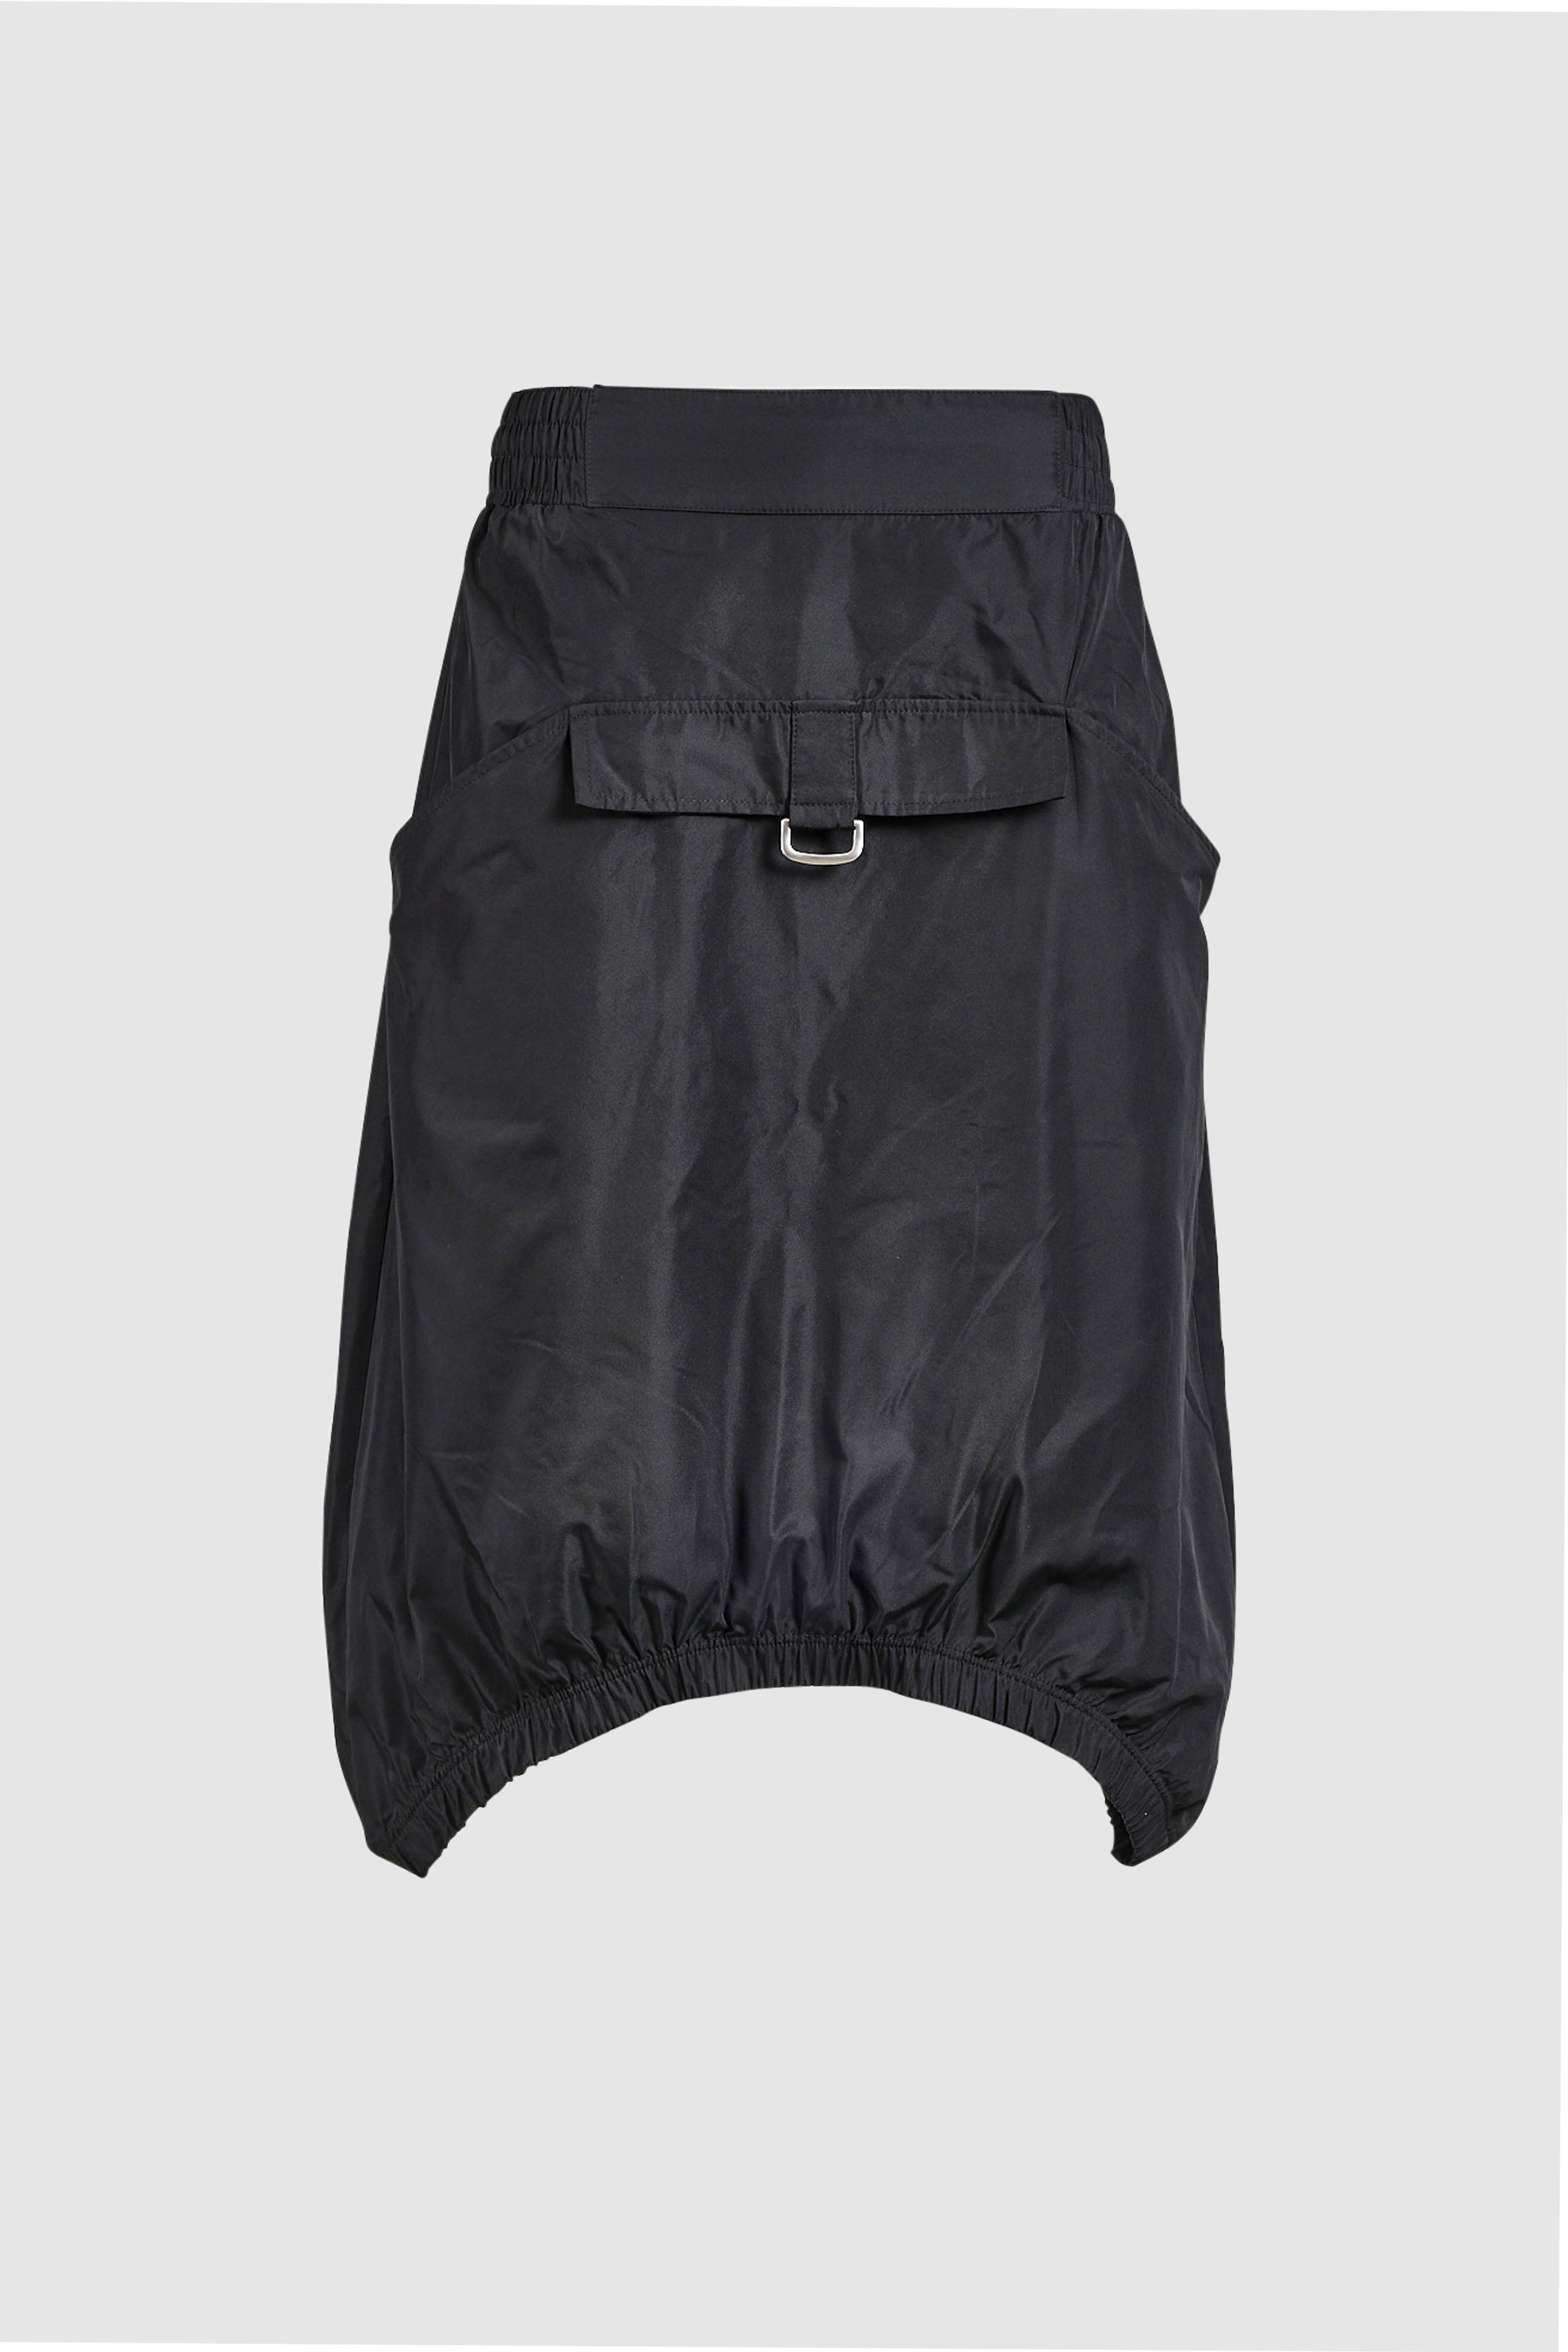 Parachute Skirt in Black